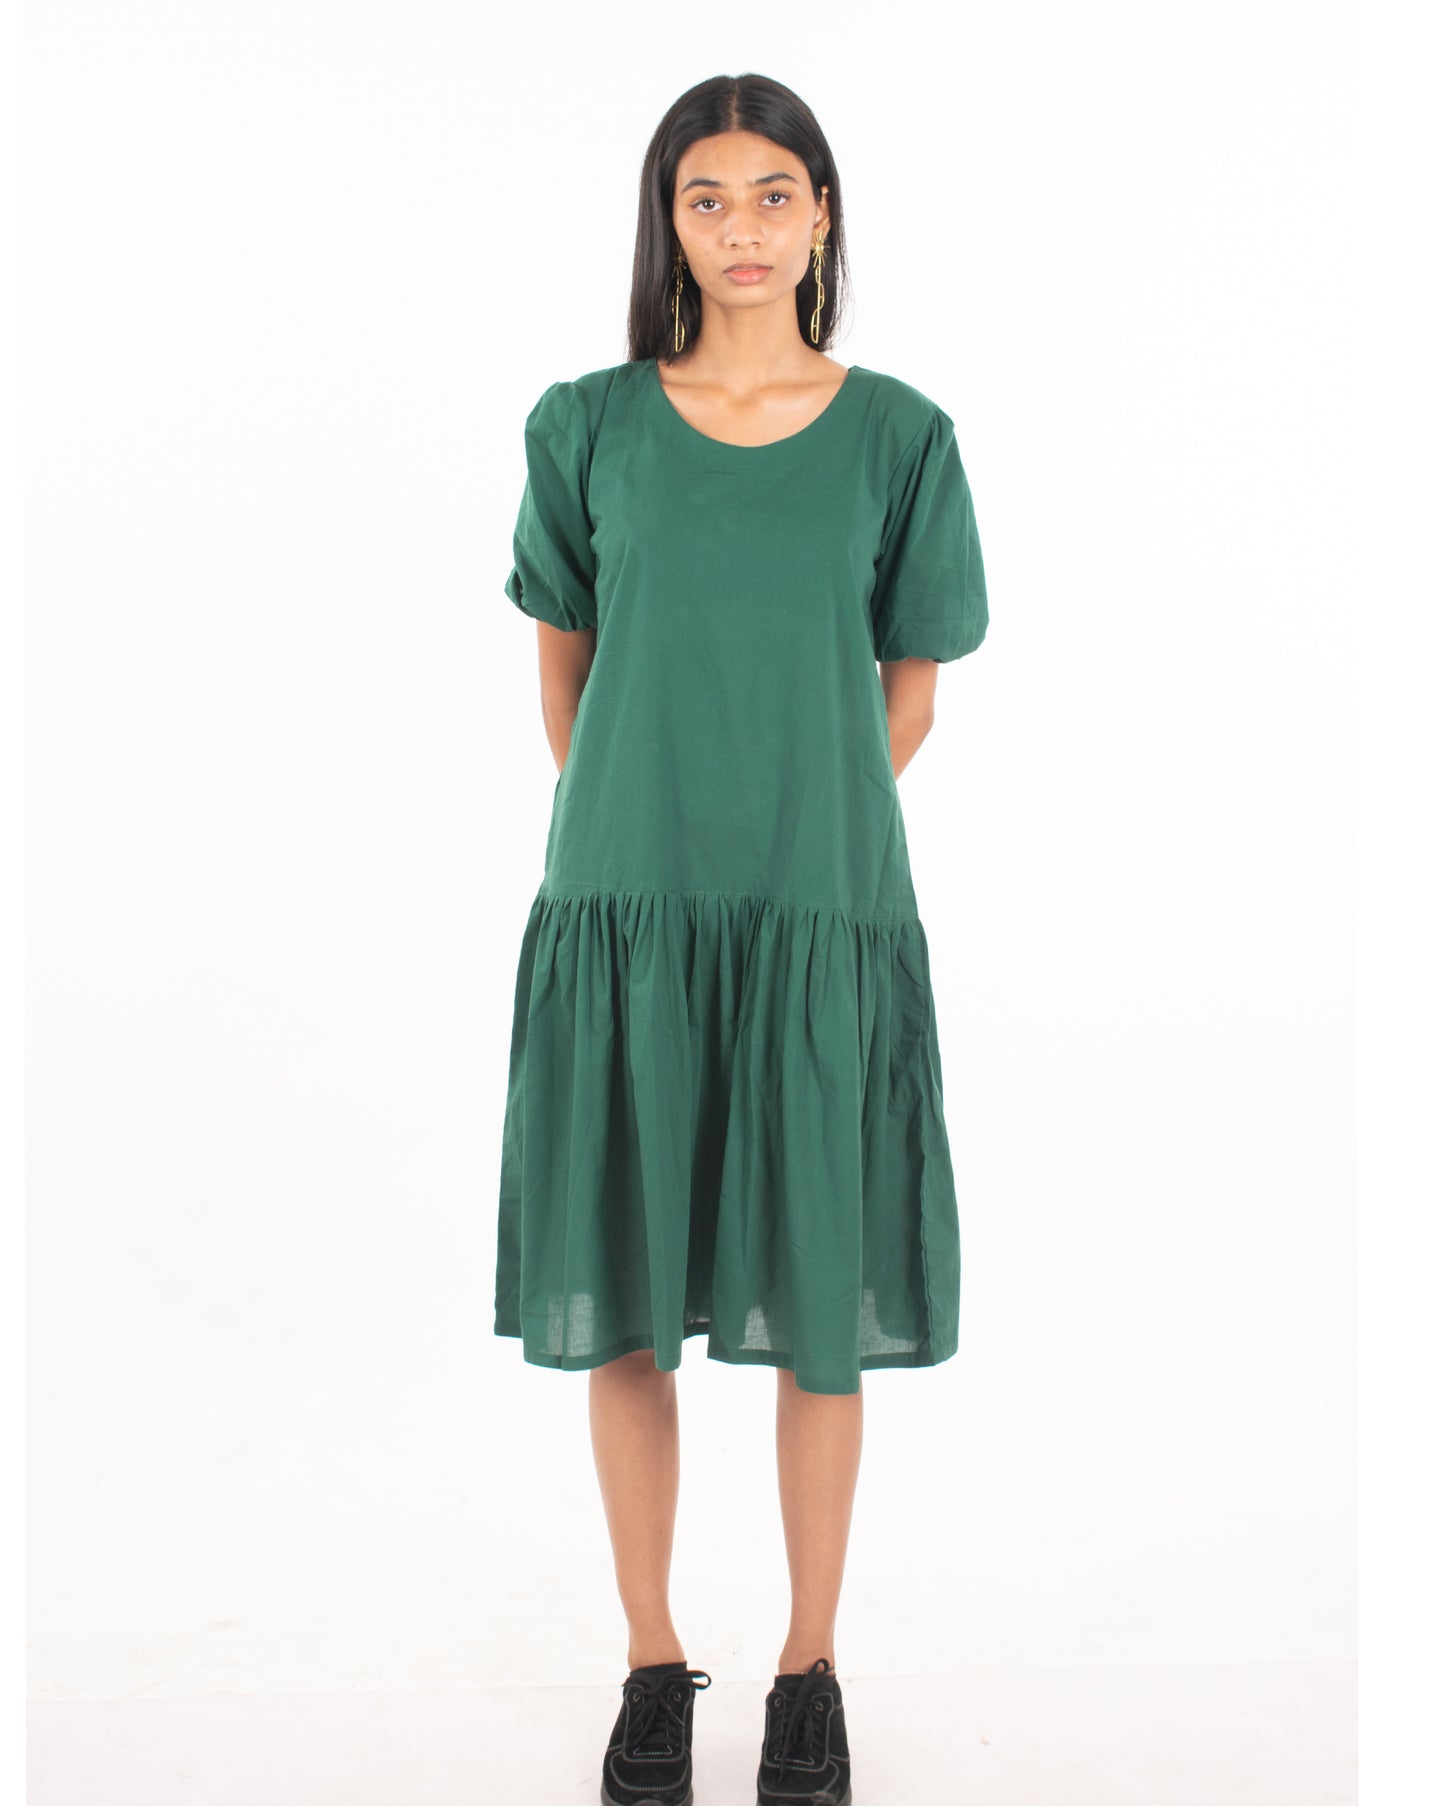 Sunday Brunch Dress (Green)